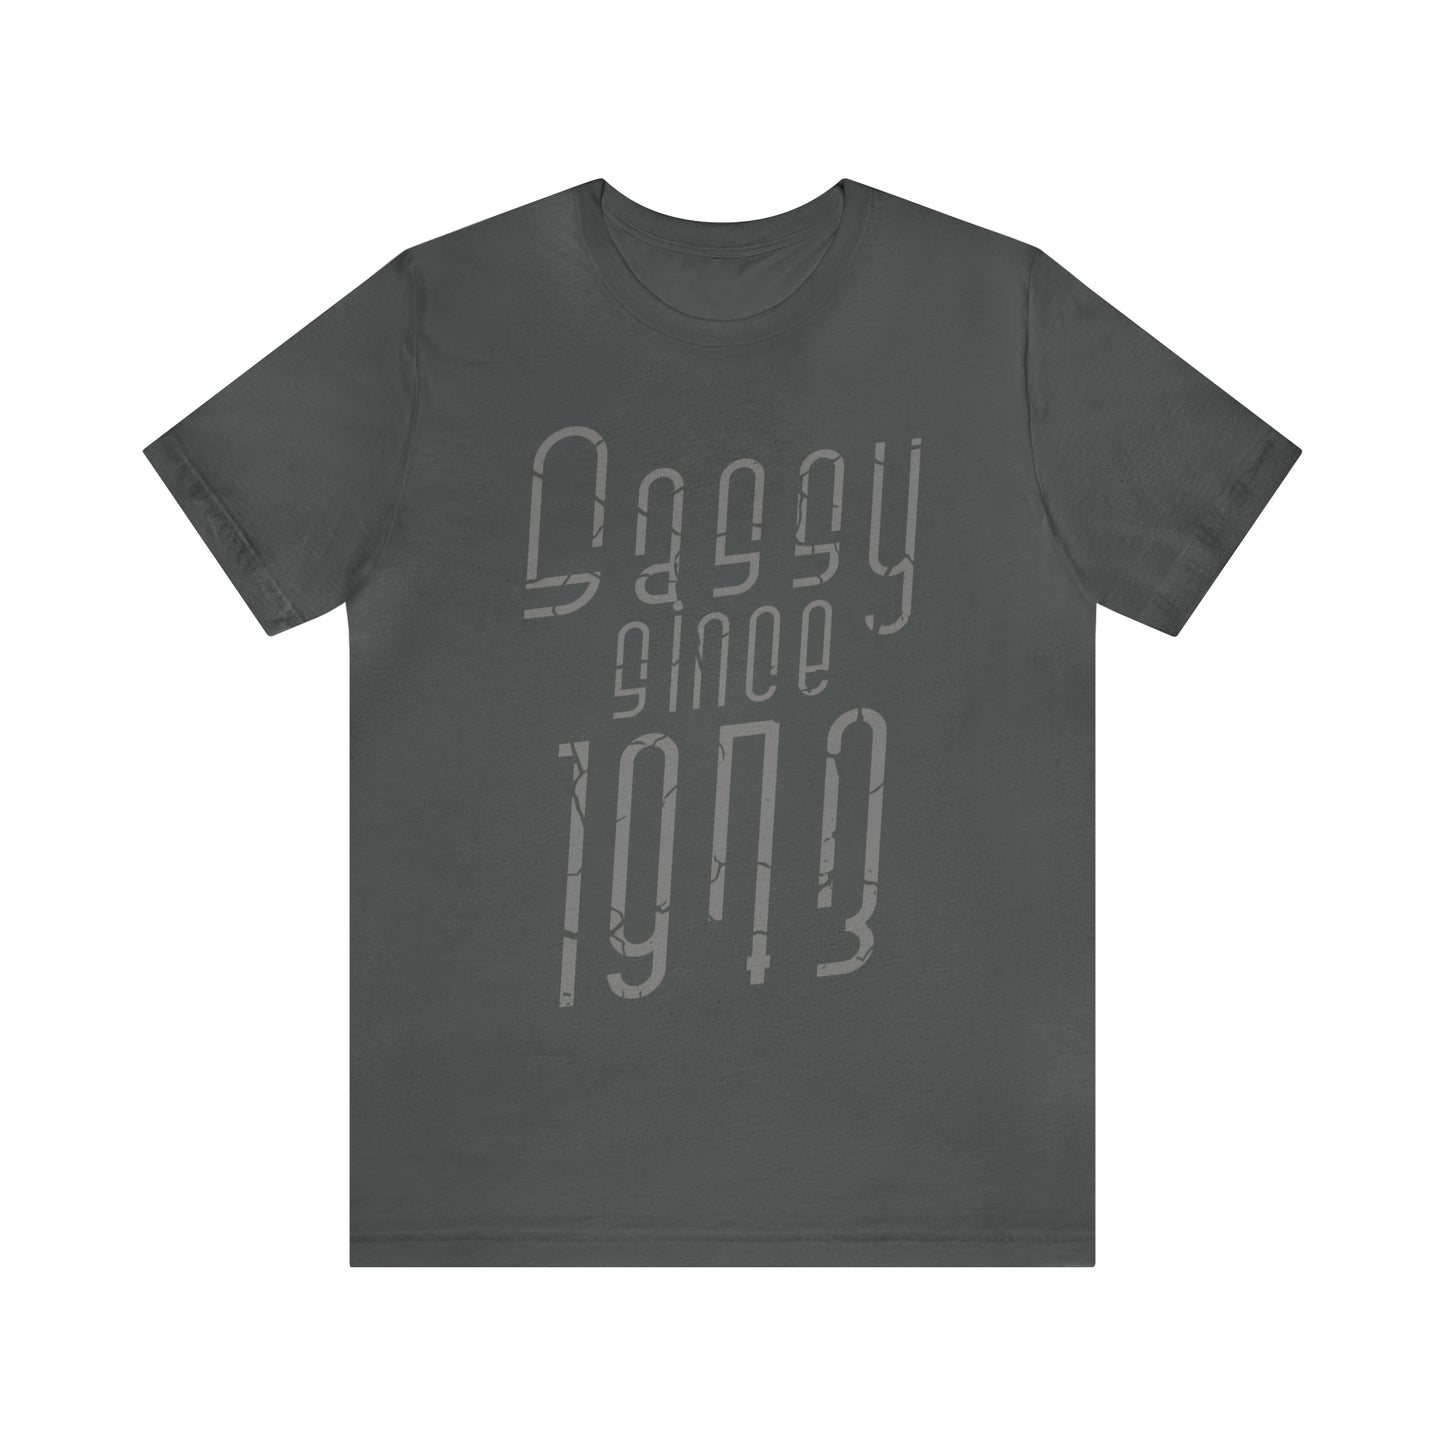 Sassy Since 1973 Shirt, Vintage Birthday Gift For Women or Men, Sassy Birthday Shirt